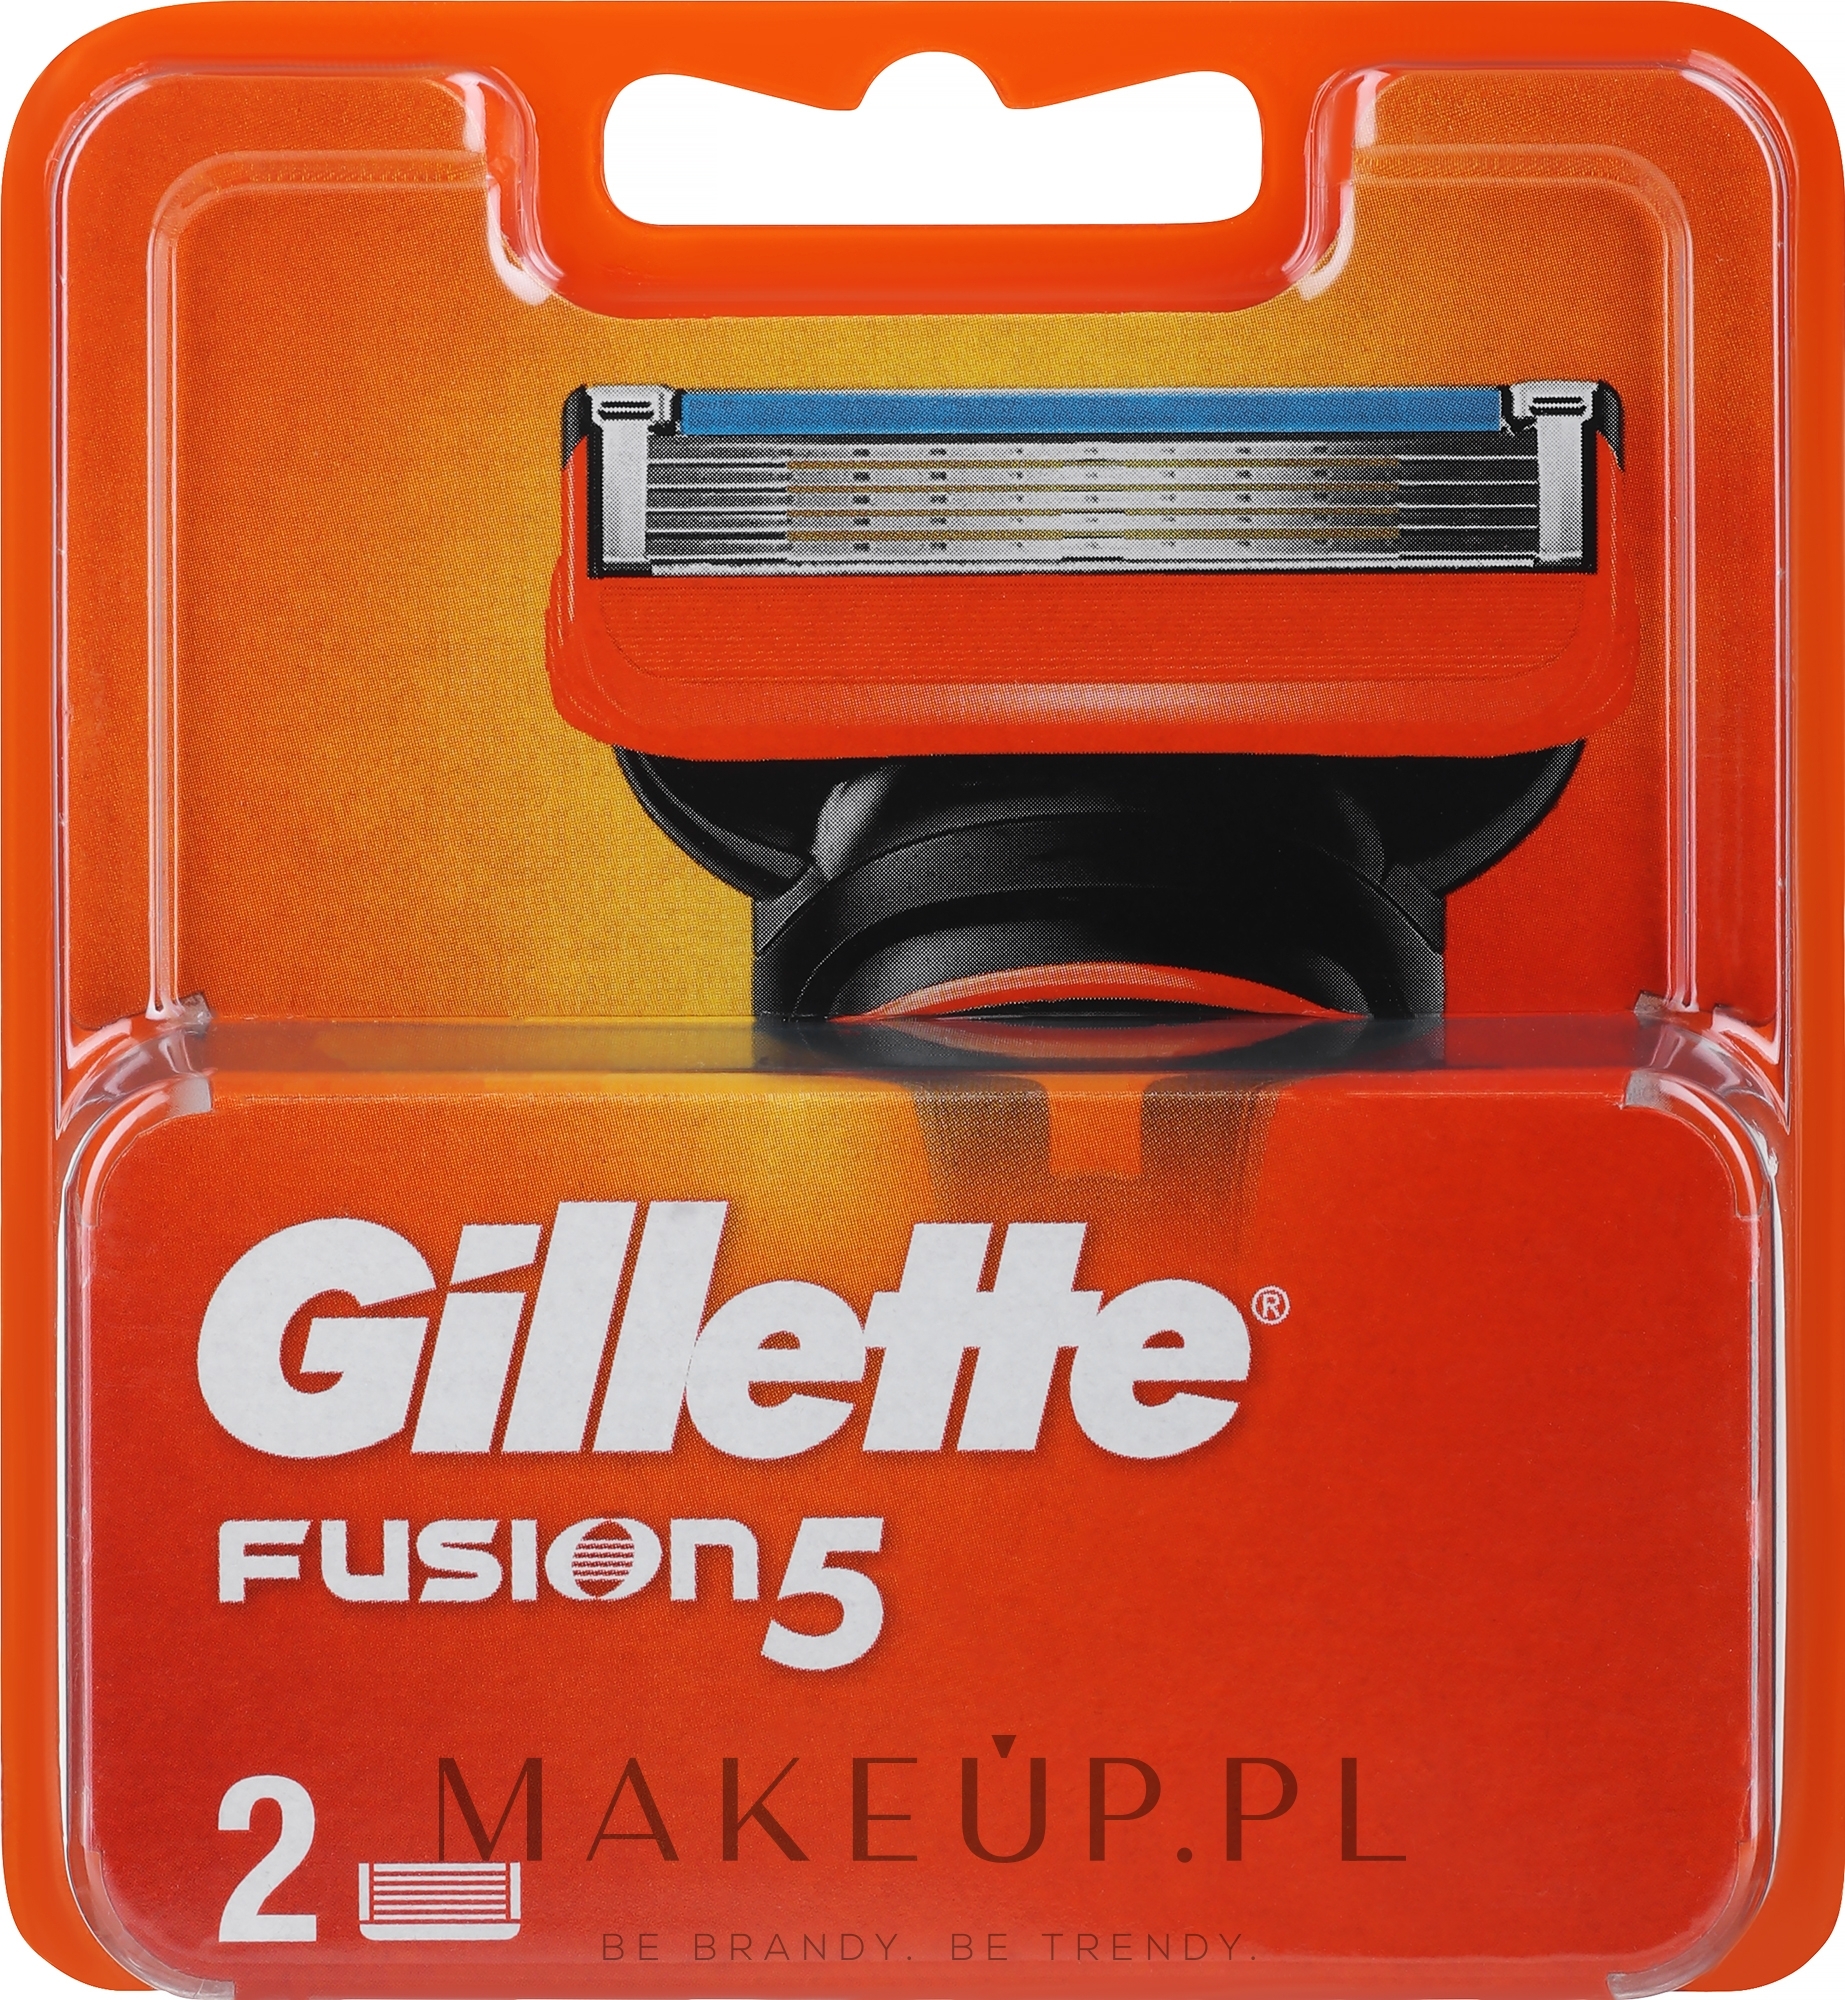 Wymienne wkłady do maszynki, 2 szt. - Gillette Fusion — Zdjęcie 2 szt.